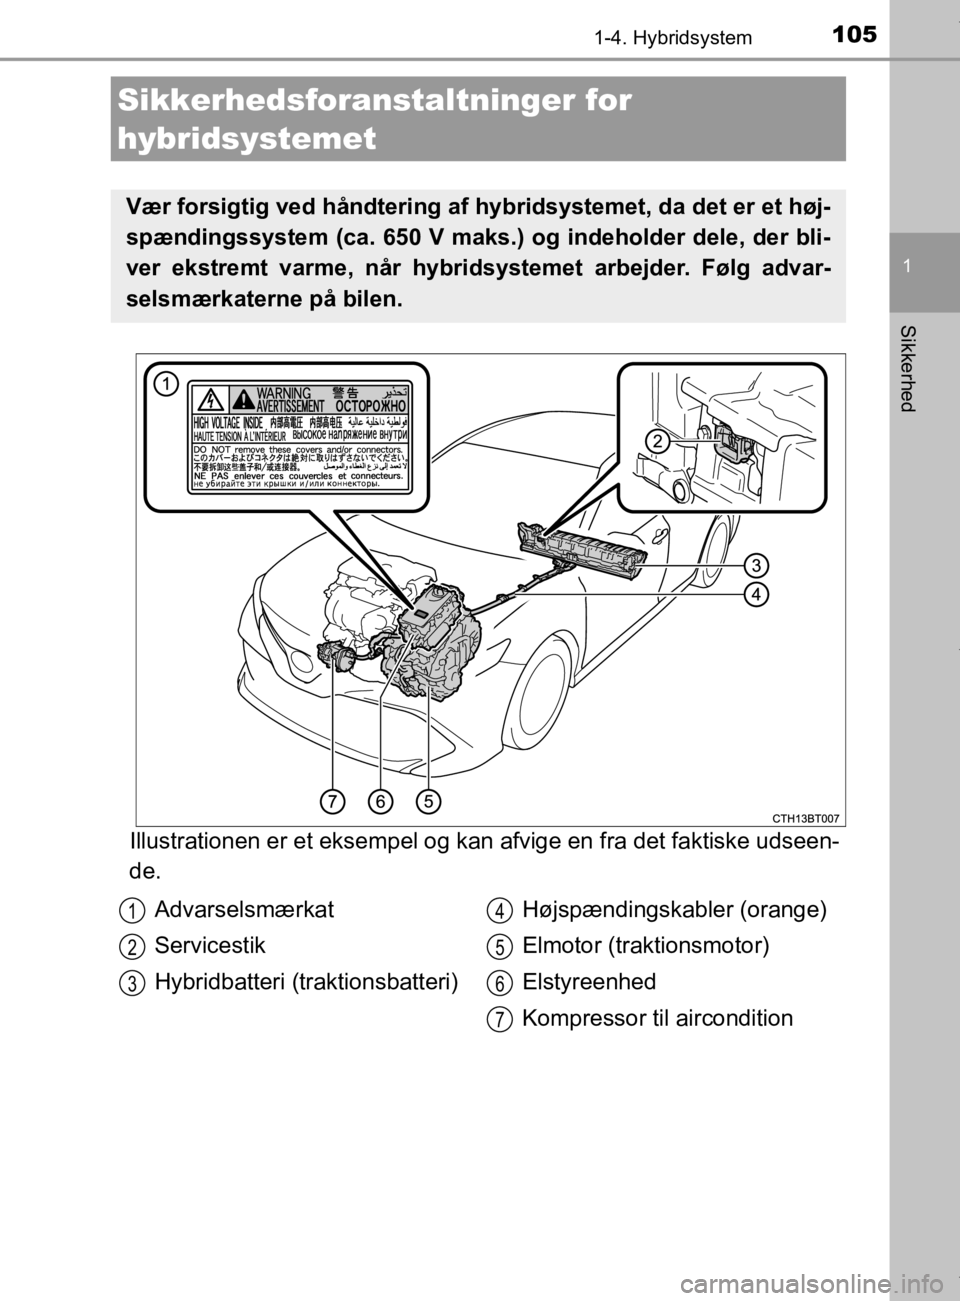 TOYOTA CAMRY 2019  Brugsanvisning (in Danish) 1051-4. Hybridsystem
1
Sikkerhed
OM33E11DK
Illustrationen er et eksempel og kan afvige en fra det faktiske udseen-
de.
Sikkerhedsforanstaltninger for 
hybridsystemet
Vær forsigtig ved håndtering af 